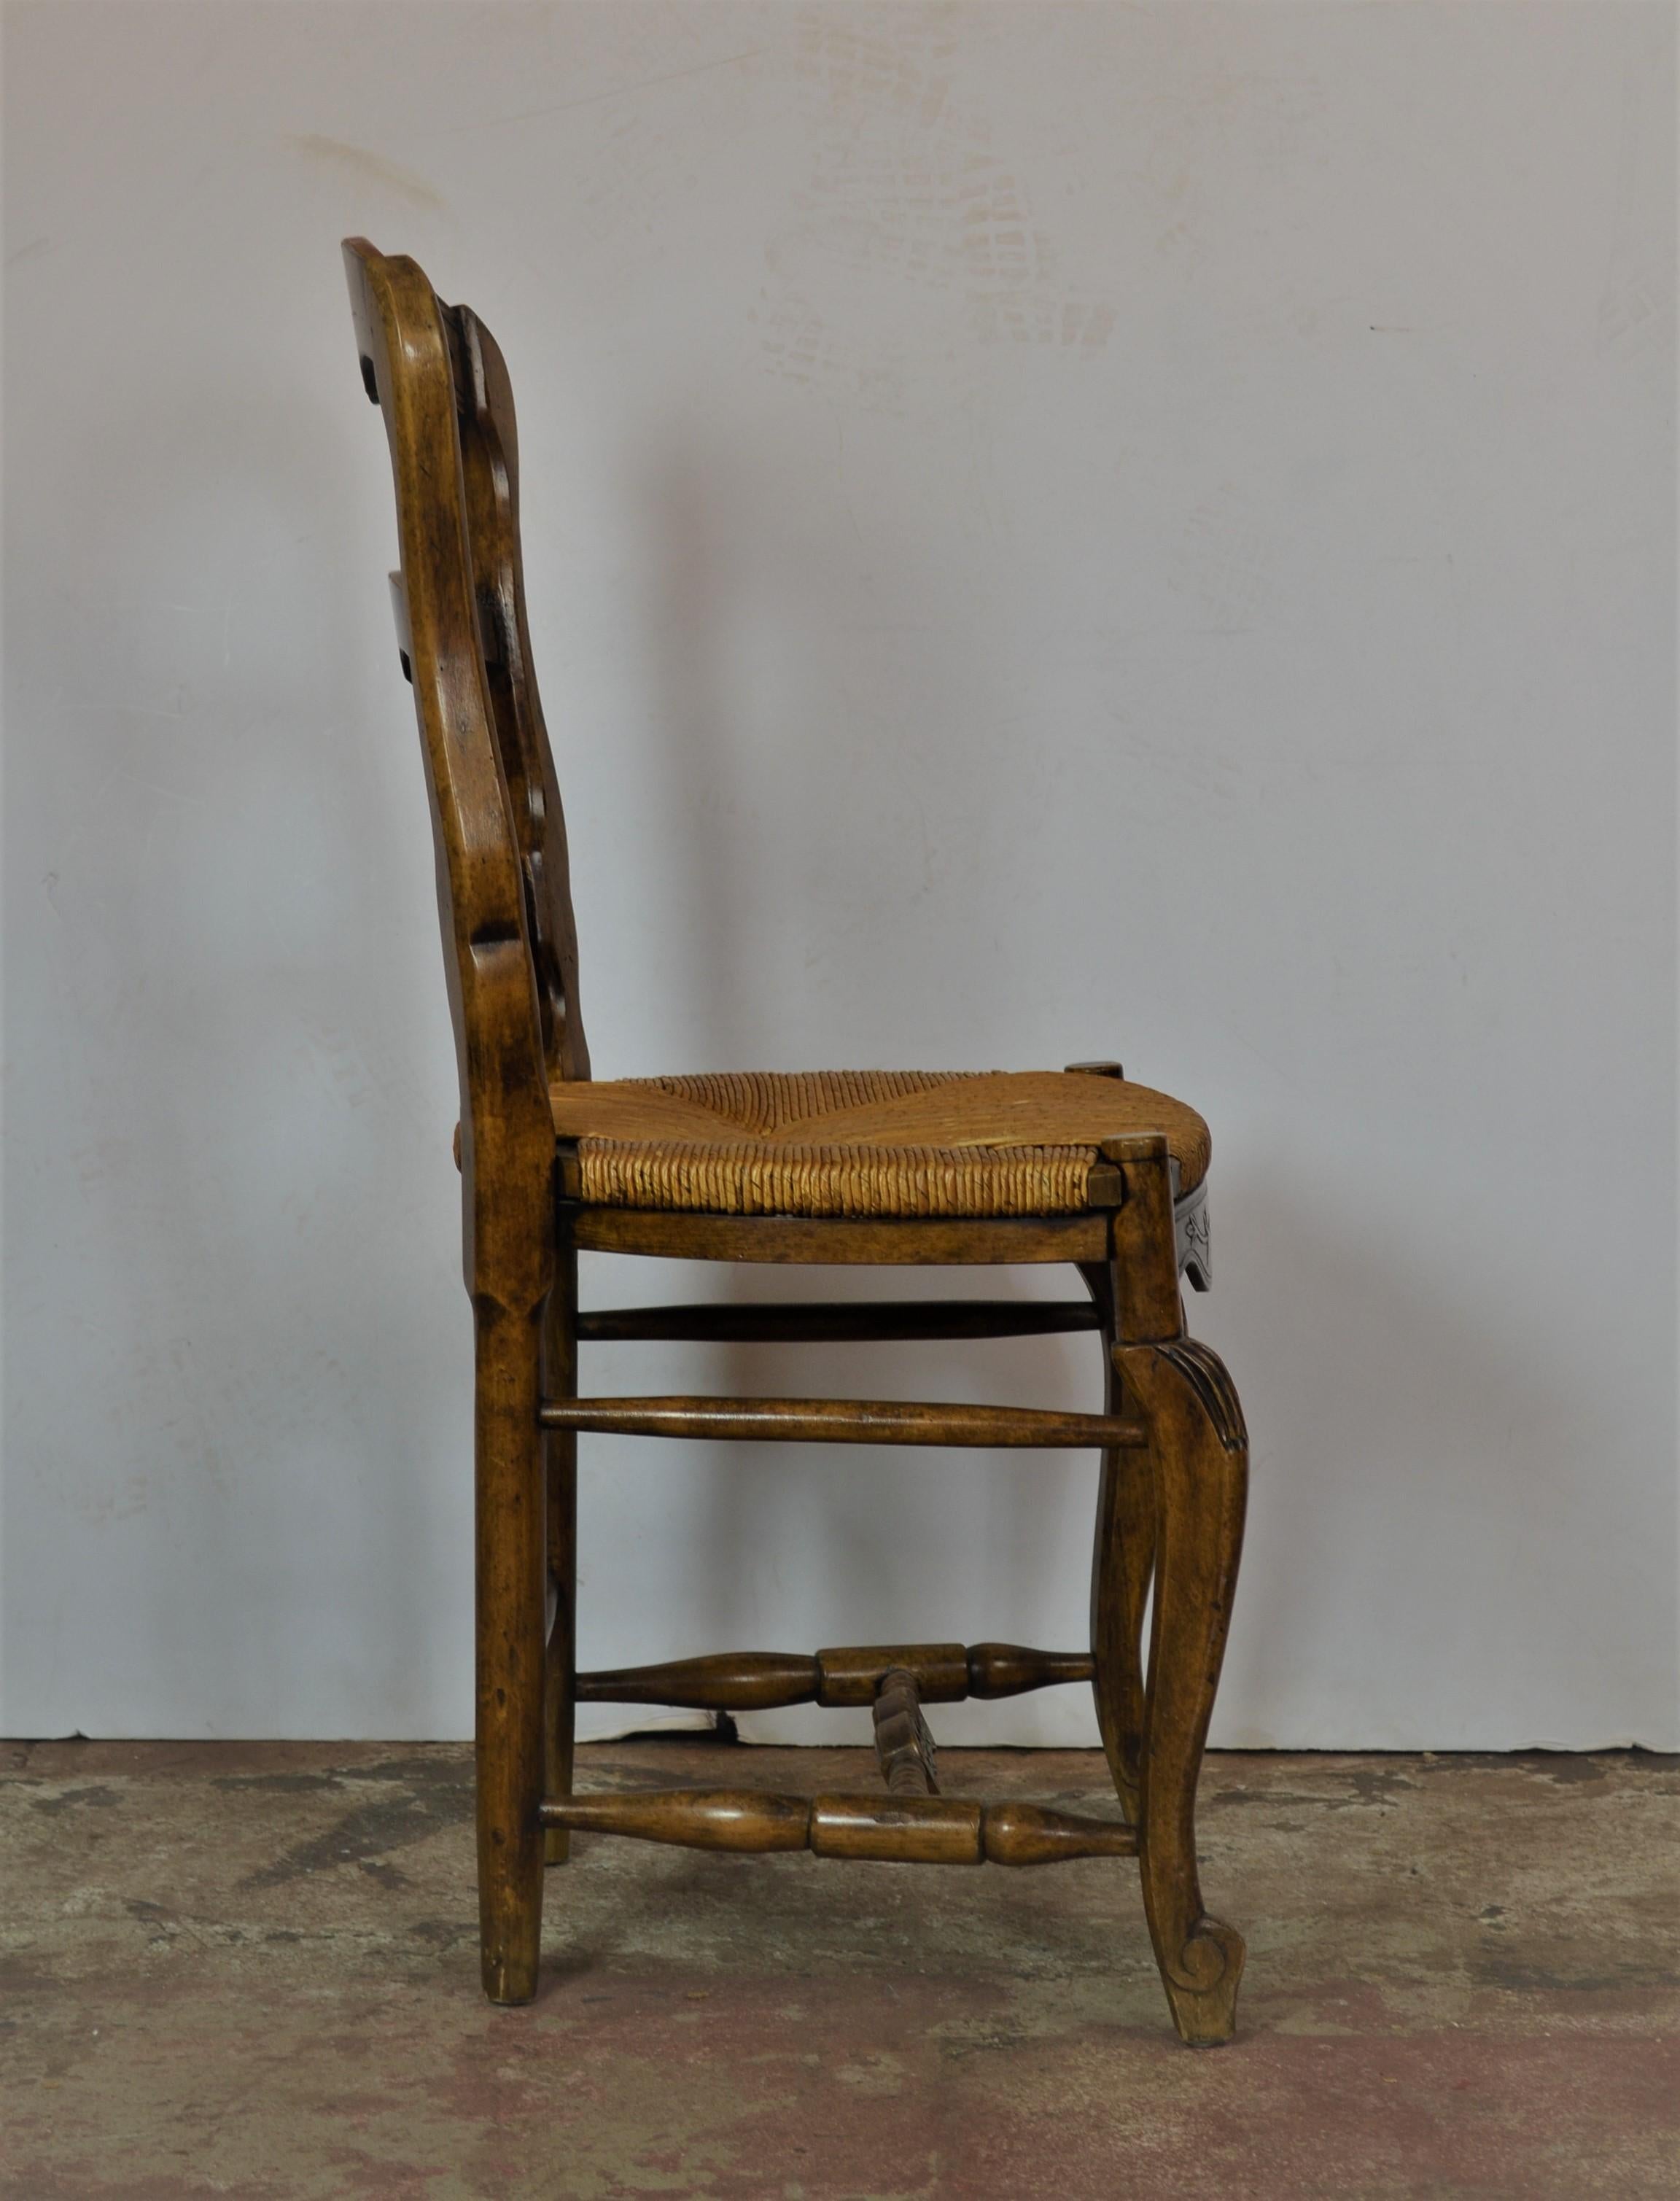 Wood Rush Seat Chairs